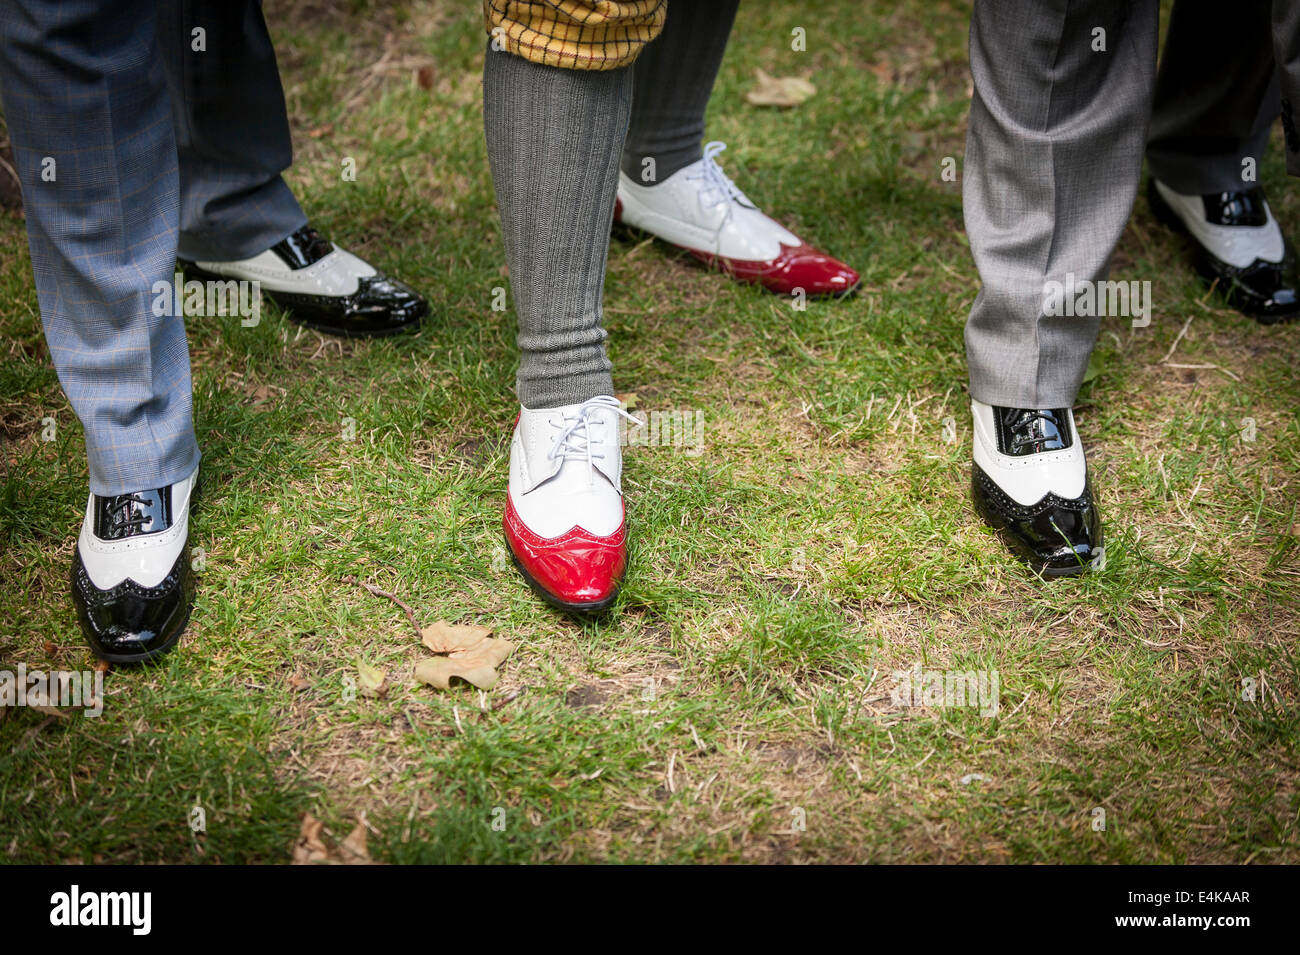 Chap-Olympiade - wingtip Schuhe werden bei der jährlichen Chap-Olympiade Veranstaltung getragen. Stockfoto